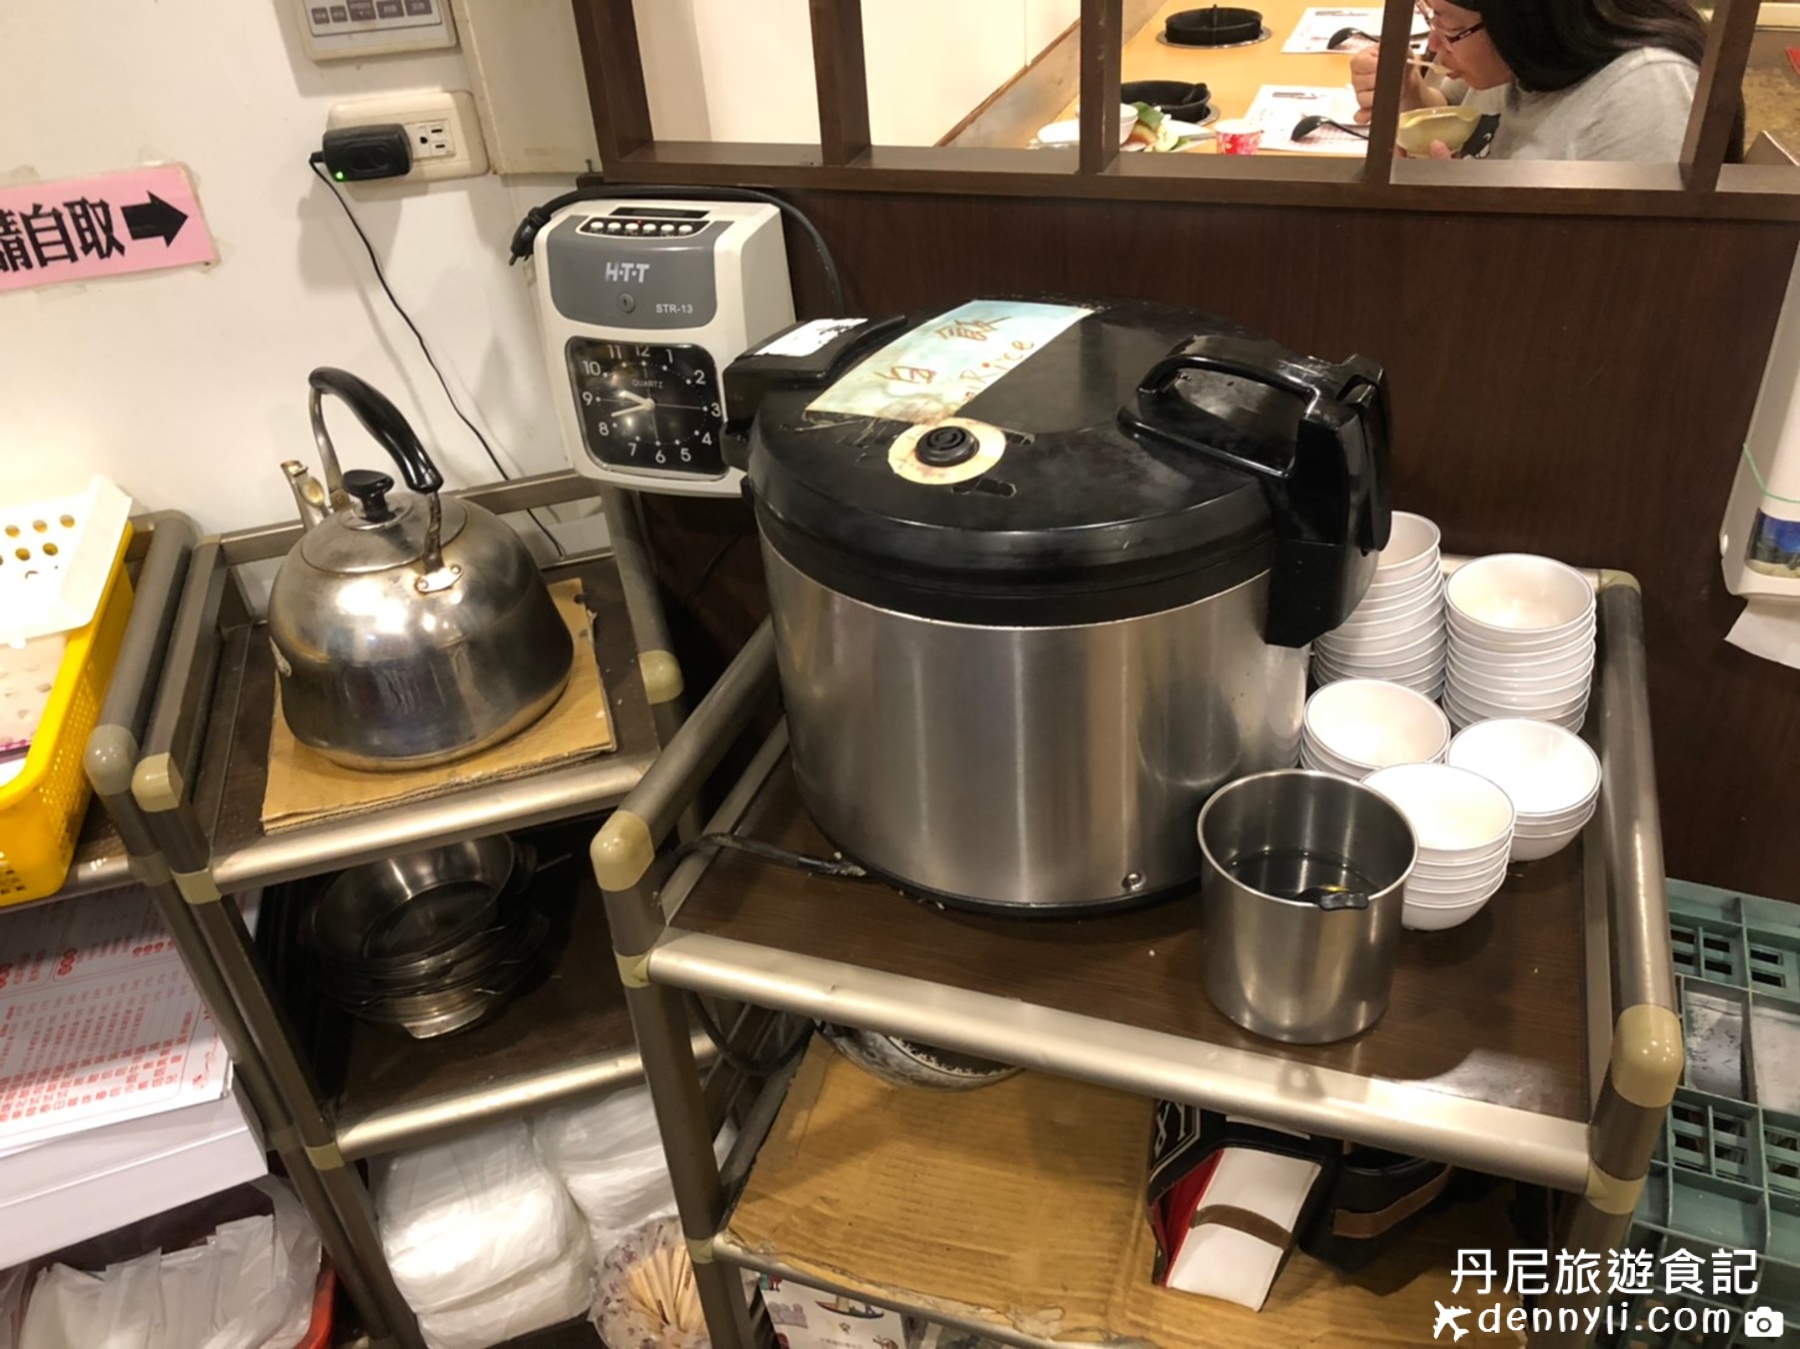 台中南區大口平價火鍋